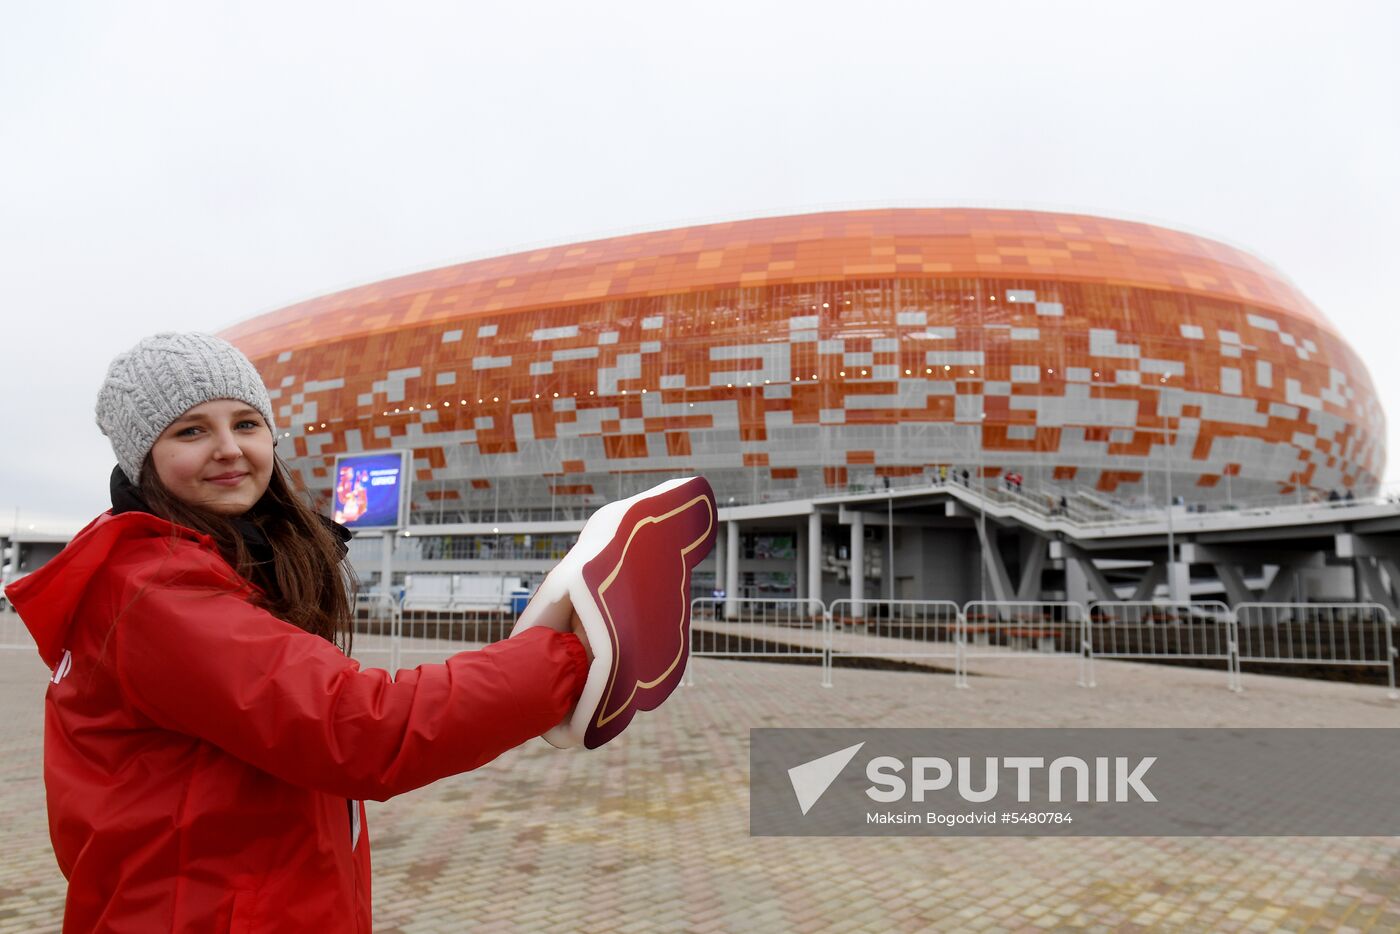 Mordovia Arena in Saransk